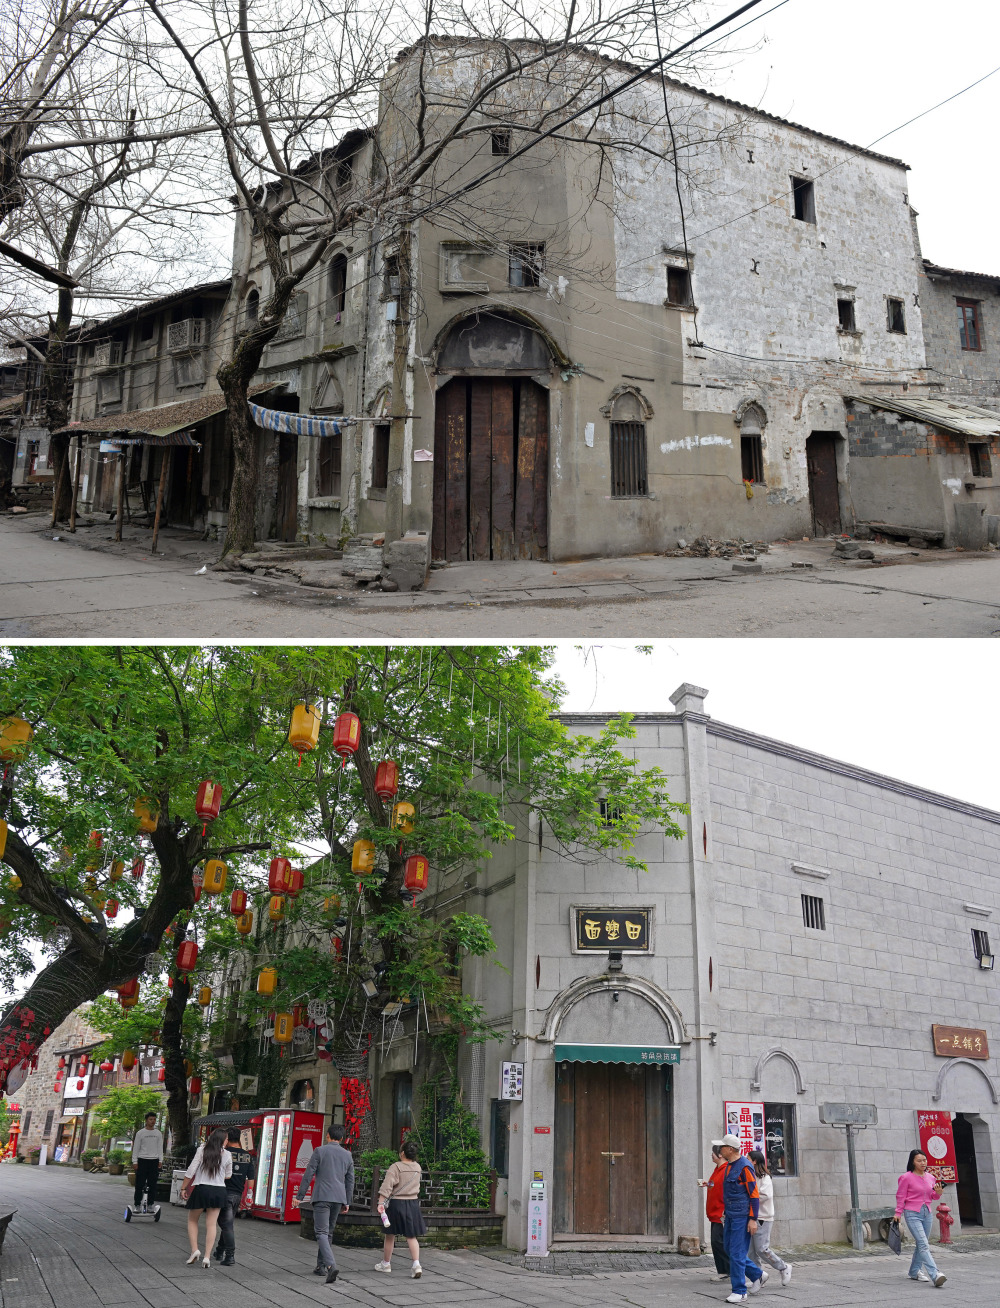 拼版照片:上图为文昌里历史文化街区三角巷修缮前的